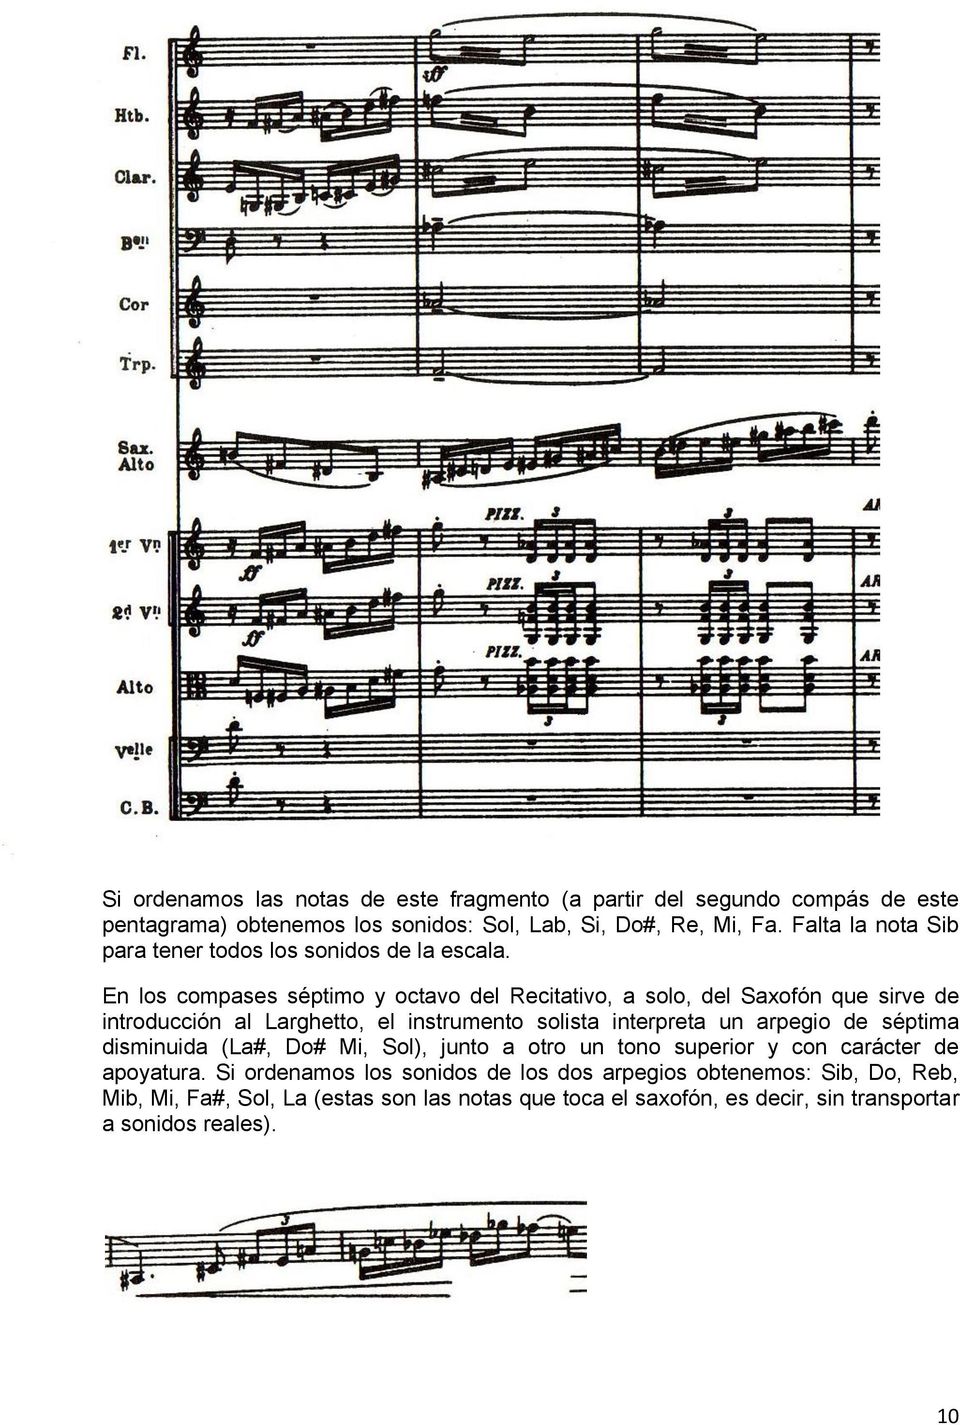 En los compases séptimo y octavo del Recitativo, a solo, del Saxofón que sirve de introducción al Larghetto, el instrumento solista interpreta un arpegio de